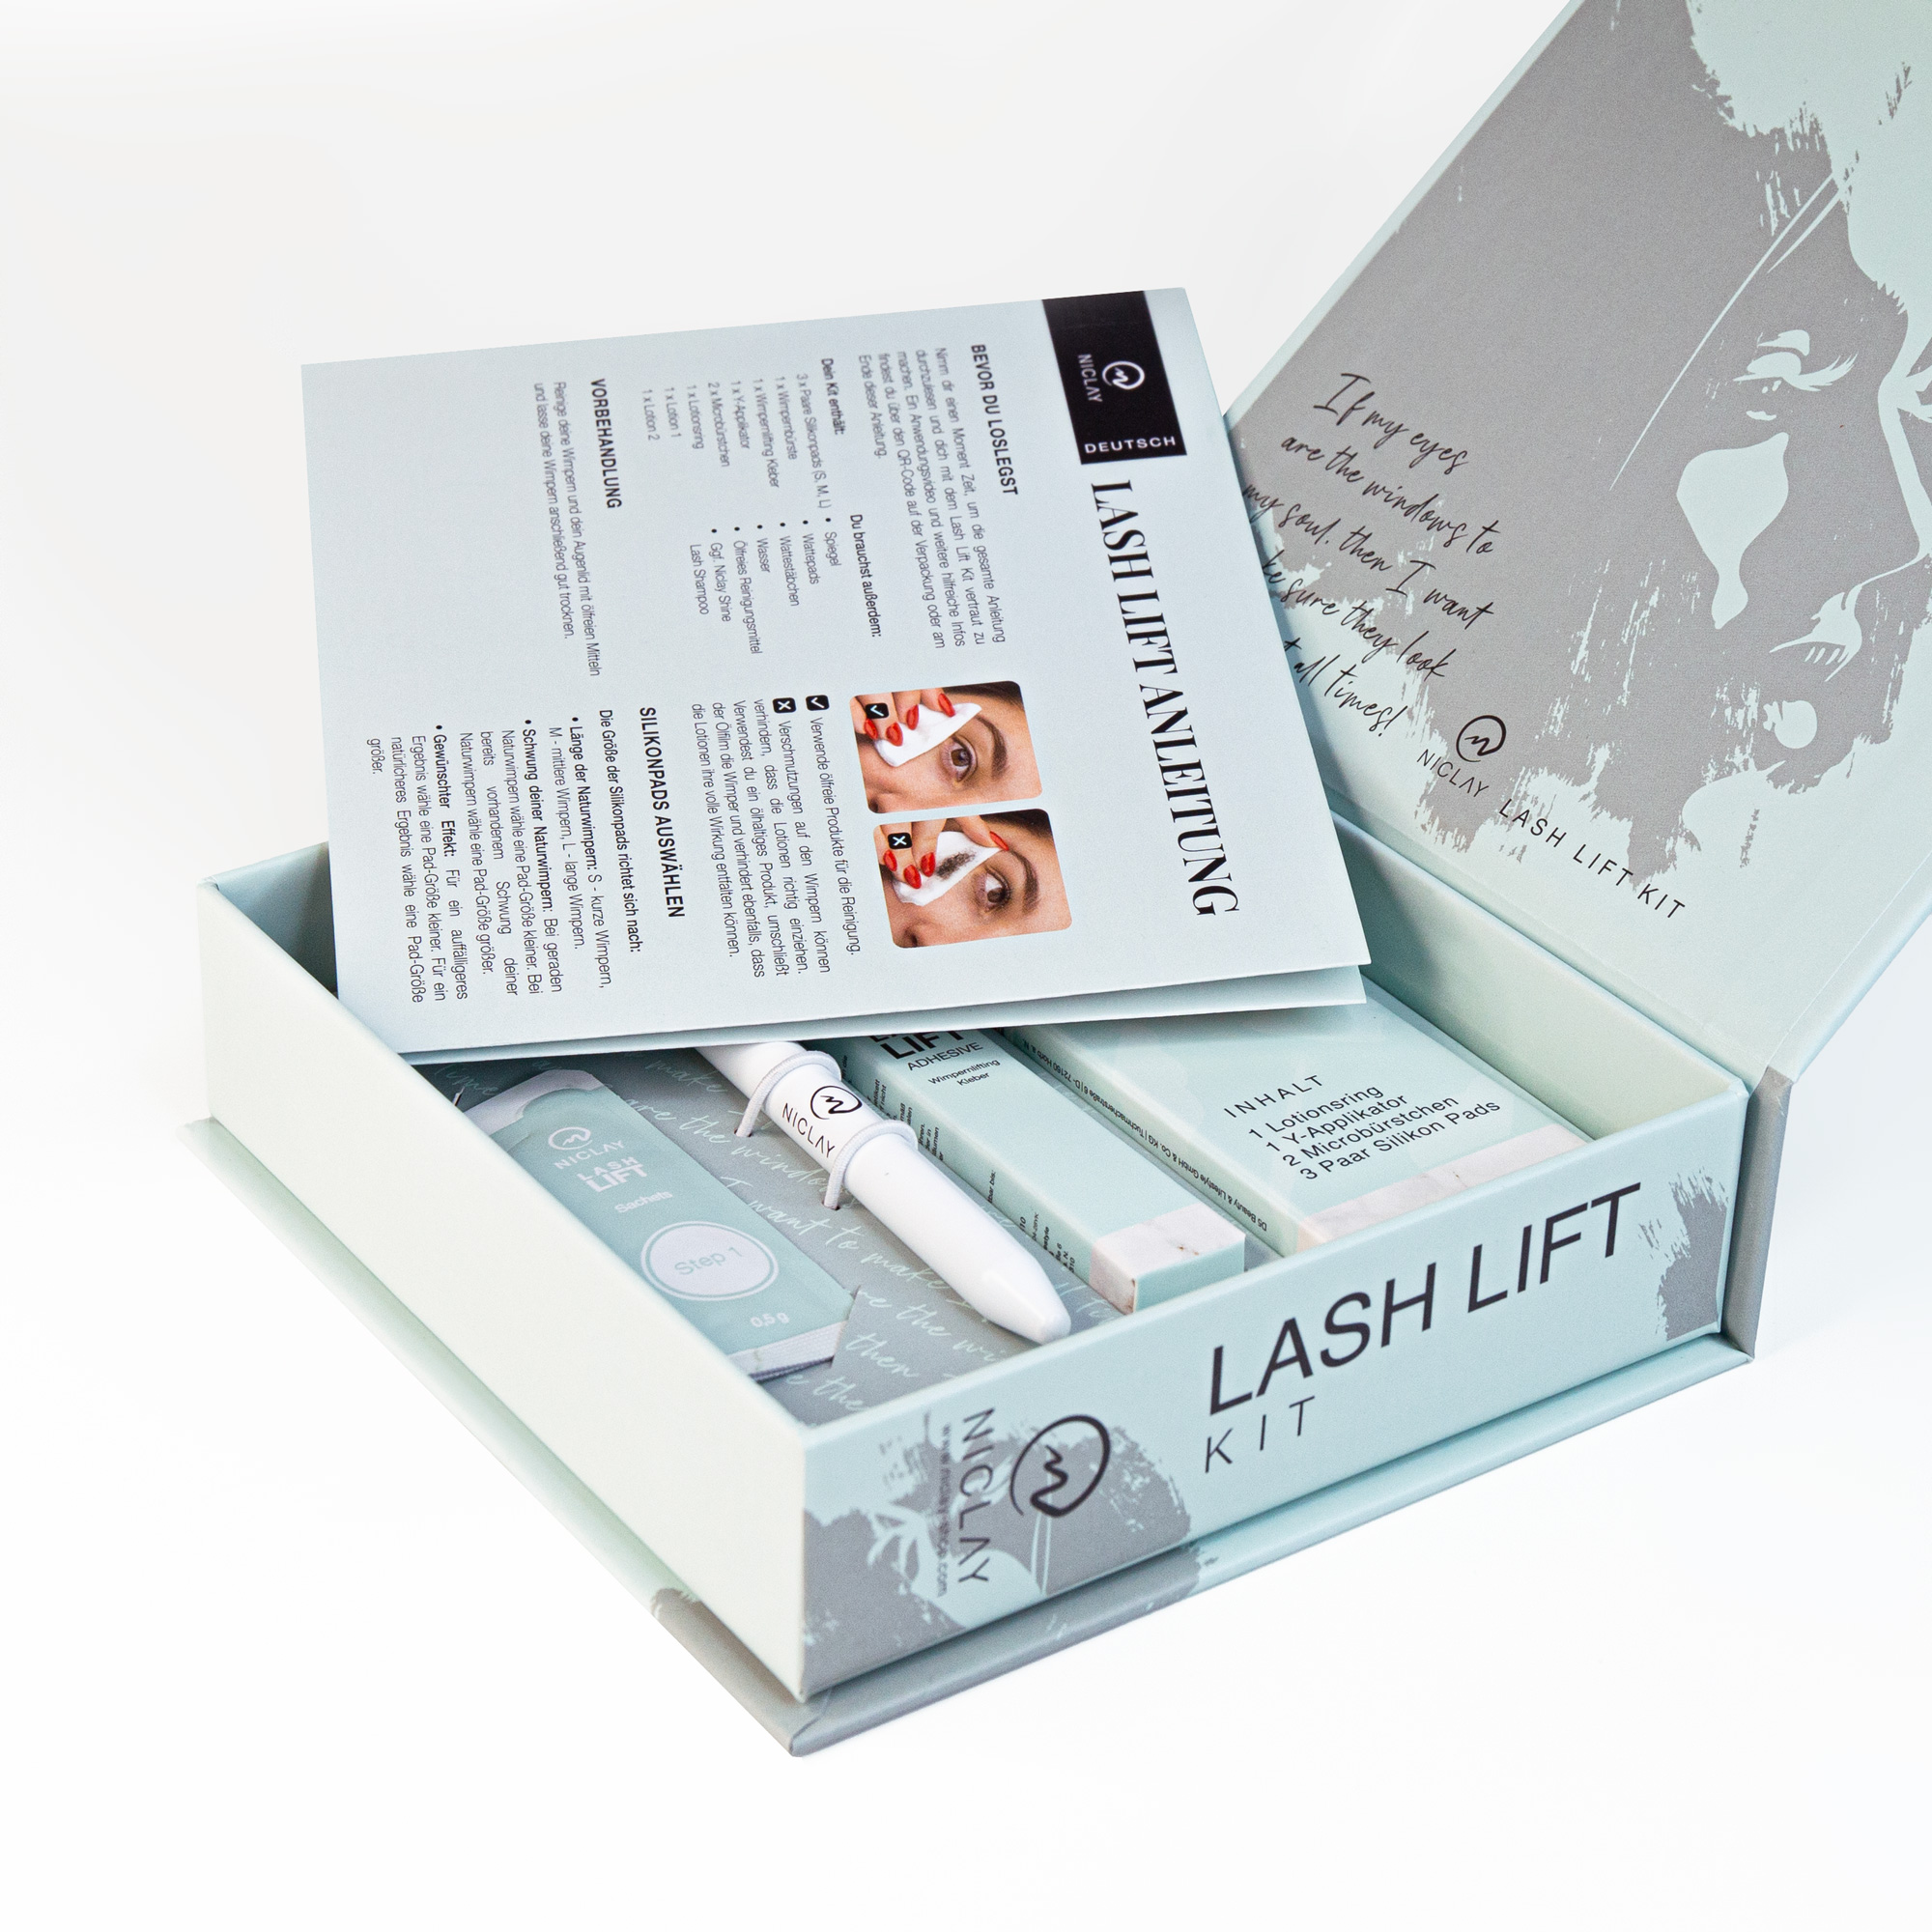 Lash Lift Home Kit